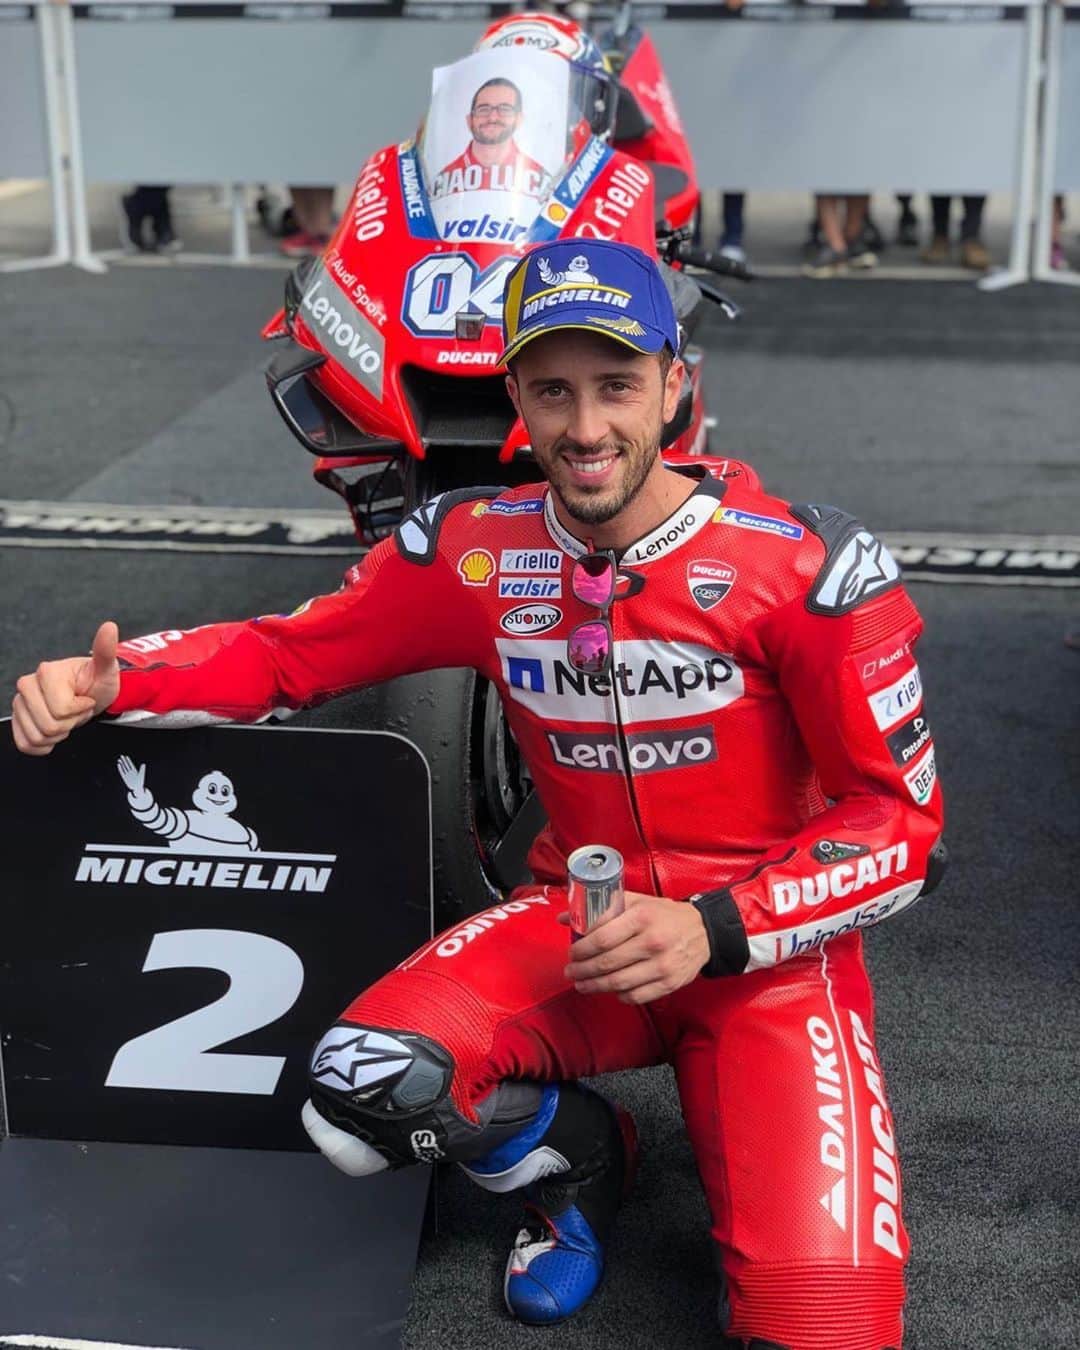 Ducati Japanさんのインスタグラム写真 - (Ducati JapanInstagram)「【MotoGP】第10戦チェコGP🇨🇿でドヴィツィオーゾが2位表彰台を獲得  2019MotoGP第10戦チェコGP🇨🇿がブルノ・サーキットで開催されました。2列目から素晴らしいスタートを切った、Ducatiチームのアンドレア・ドヴィツィオーゾは、すぐにポール・ポジションからスタートしたマルク・マルケス（ホンダ）の後ろにつくと、そのまま2番手をキープしてチェッカーフラッグを受けました。3列目からスタートしたチームメイトのダニーロ・ペトルッチは、8位でフィニッシュしました。  アンドレア・ドヴィツィオーゾ（ドゥカティ・チーム #04） 2位 「今日の2位には満足している。僕たちのマシンは週末を通して速かったが、残念ながらレースで勝つことはできなかった。マルケスとは違うリアタイヤを選択し、スタートでうまく抜け出して彼の後ろについたが、マルケスがハードにブレーキングを始めると、彼をオーバーテイクできるだけの十分な差を詰めることができなかった。残念だが、彼に大きく後れを取っているわけではないので、僕たちのやっていることを信じてこれからも続けていくつもりだ。明日も、ここブルノで重要なテストを行って数多くの新しいパーツを試す予定なので、次のレースに向けてポジティブに前進したい」  ダニーロ・ペトルッチ（ドゥカティ・チーム #09） 8位 「シーズンが始まって以来、一番困難なレースとなった。金曜日のフリー走行で苦戦していたため、昨日のドライコンディションで走るチャンスを逃してしまった。レースでは、スタートからグリップが不足して、トップグループに離されてしまったので苦しい展開となった。レースの終盤では、タイヤを使い果たしてしまったので、他のライバルとのバトルでさらに厳しい状況となった。ライダーズ・ランキングでは、リンス（アレックス：スズキ）にポイントを詰められてしまったのが残念だが、まだ3位をキープしている。幸運にも、明日は終日ここでテストを行うことができるので、何を改善したらよいのかを解明したい」  第10戦終了時点で、ドヴィツィオーゾとペトルッチは、それぞれ合計147ポイントと129ポイントを獲得して、ライダーズ・ランキング2位と3位をキープしています。マニュファクチャラーズ・ランキングでも、合計177ポイントのドゥカティは2位をキープしています。チーム・ランキングでは、合計276ポイントを獲得したドゥカティ・チームが、2位との差を40ポイントに広げて、引き続きトップに立っています。  第11戦のオーストリアGPは、8月9日～11日にレッドブル・リンクで開催されます。 引続きDucatiチームへのご声援をよろしくお願いいたします！  #DucatiTeam #Ducati #ForzaDucati #MotoGP #ドゥカティ #パニガーレV4 #CzechGP」8月5日 17時17分 - ducatijapan